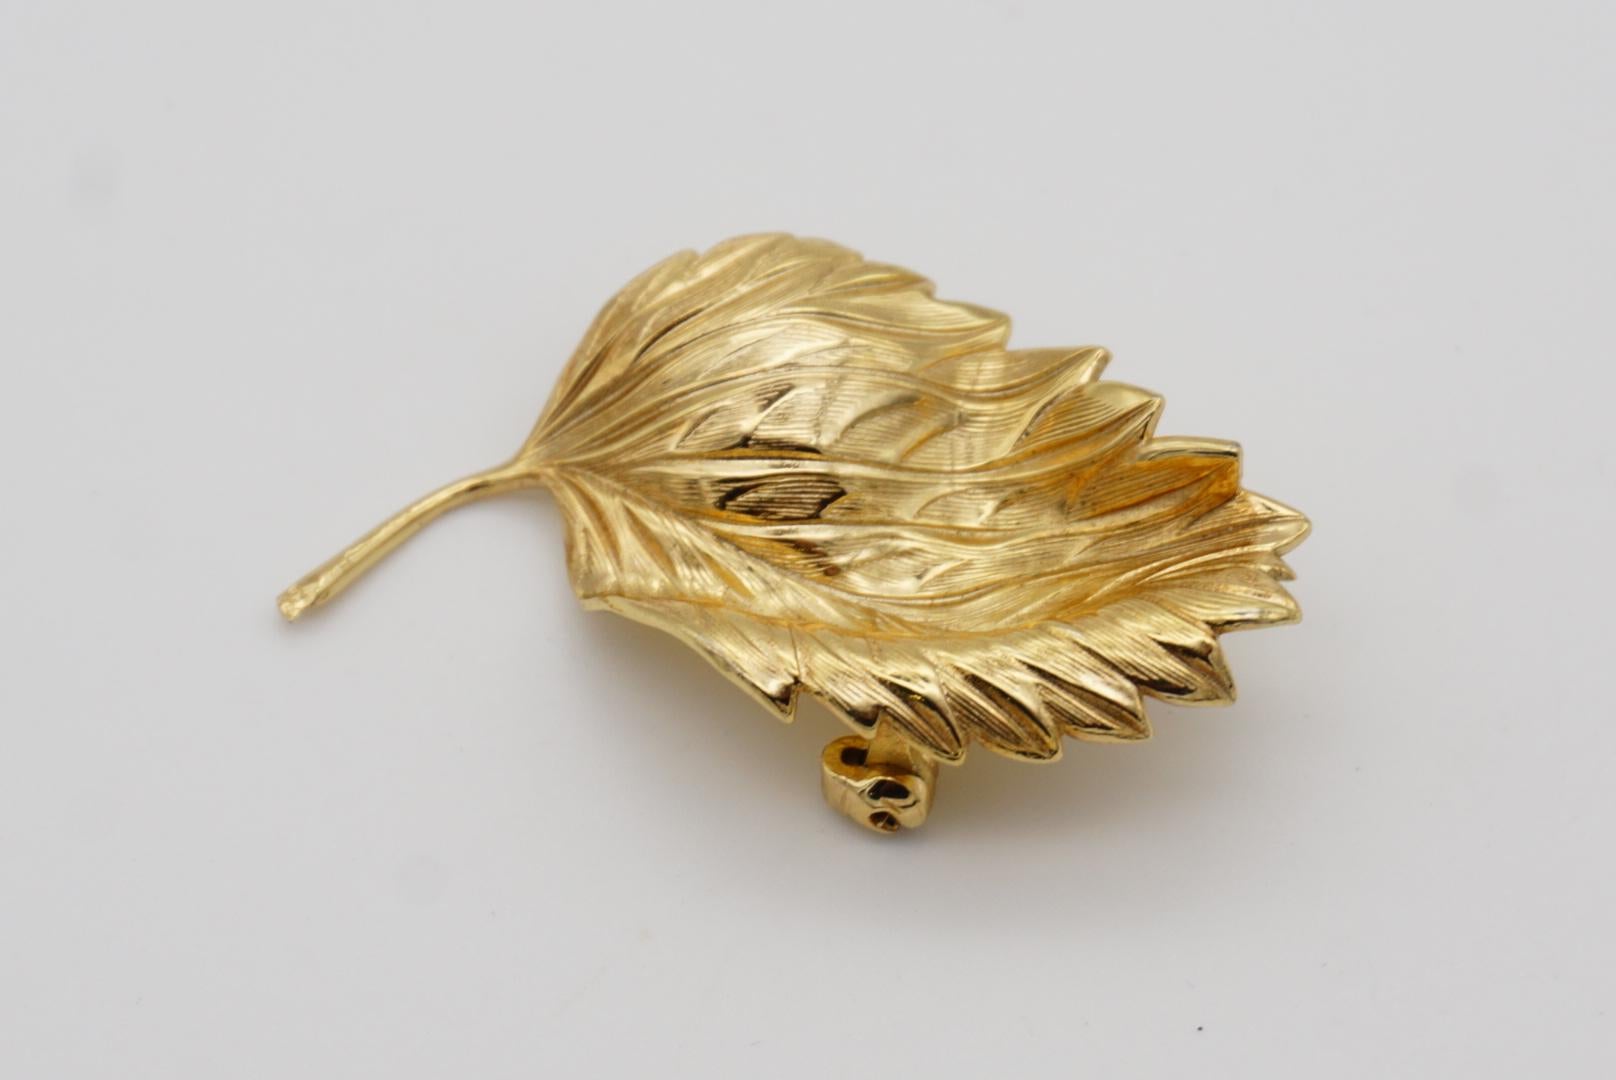 Christian Dior GROSSE 1967 Vintage Autumn Wave Wind Fallen Leaf Gold Brooch For Sale 1